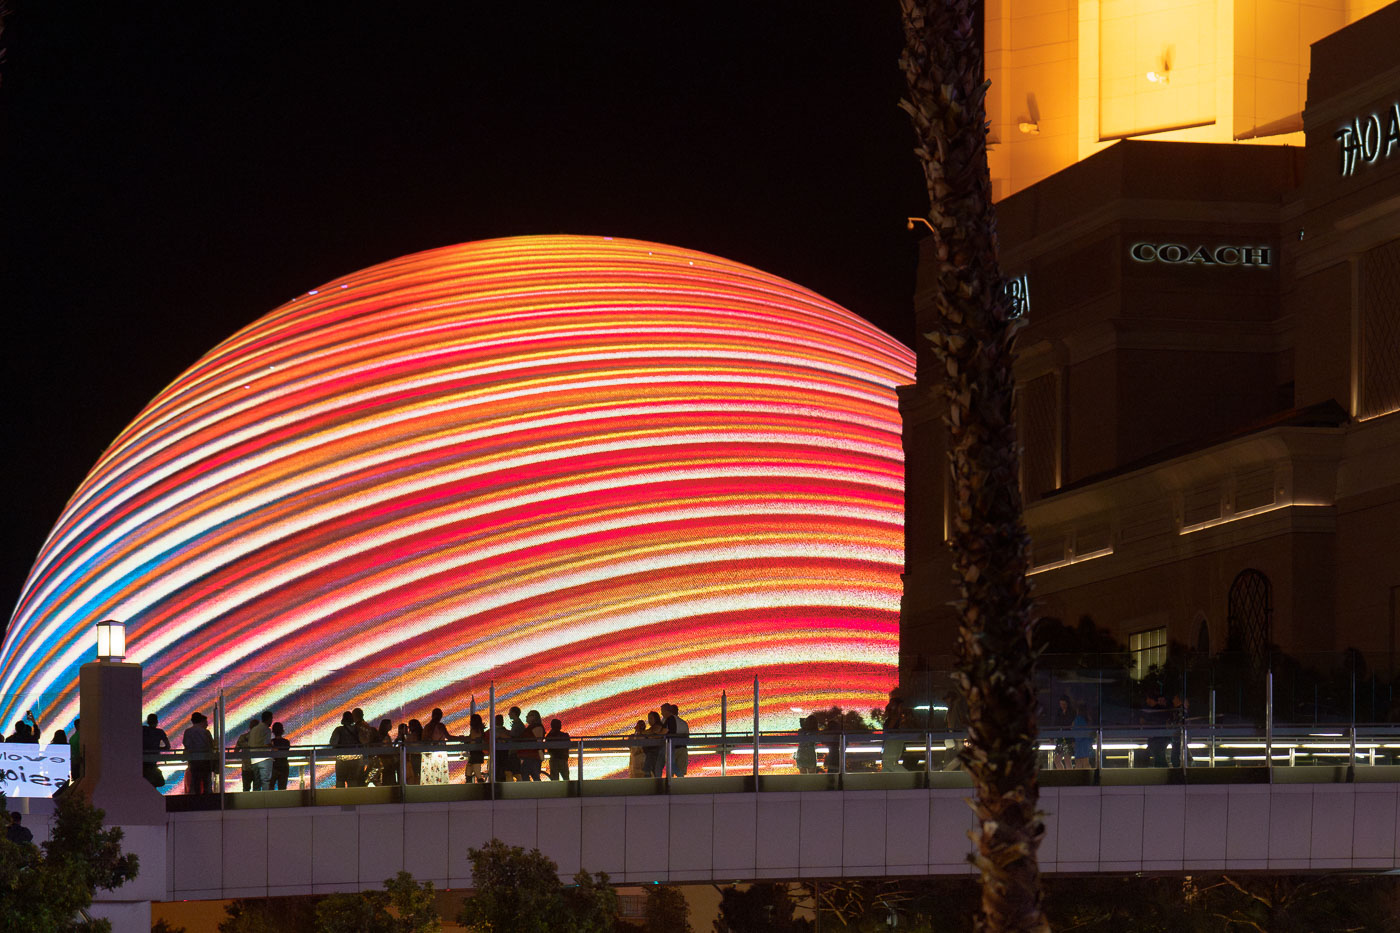 The Sphere and walkway in Las Vegas